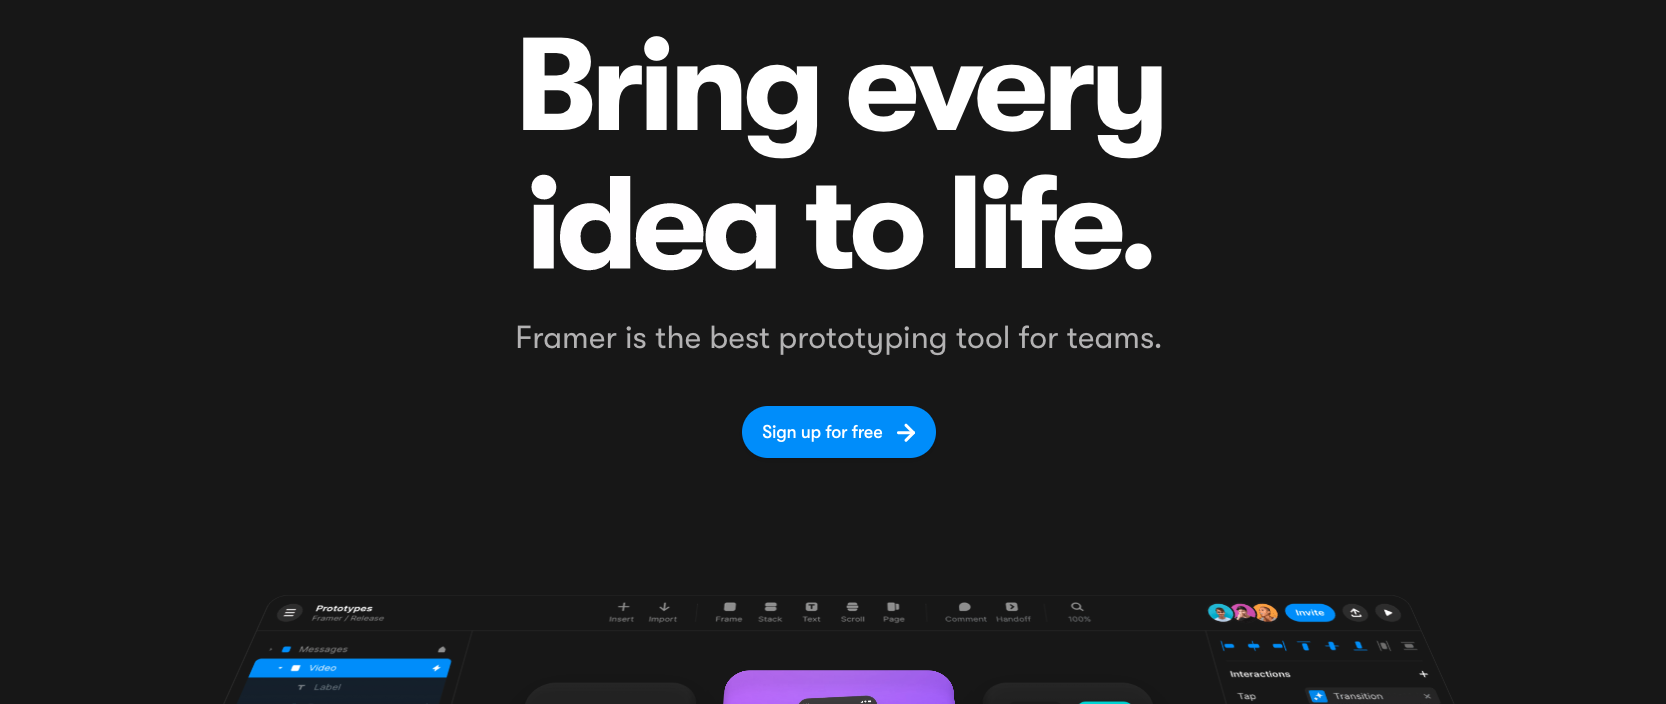 Framer.com